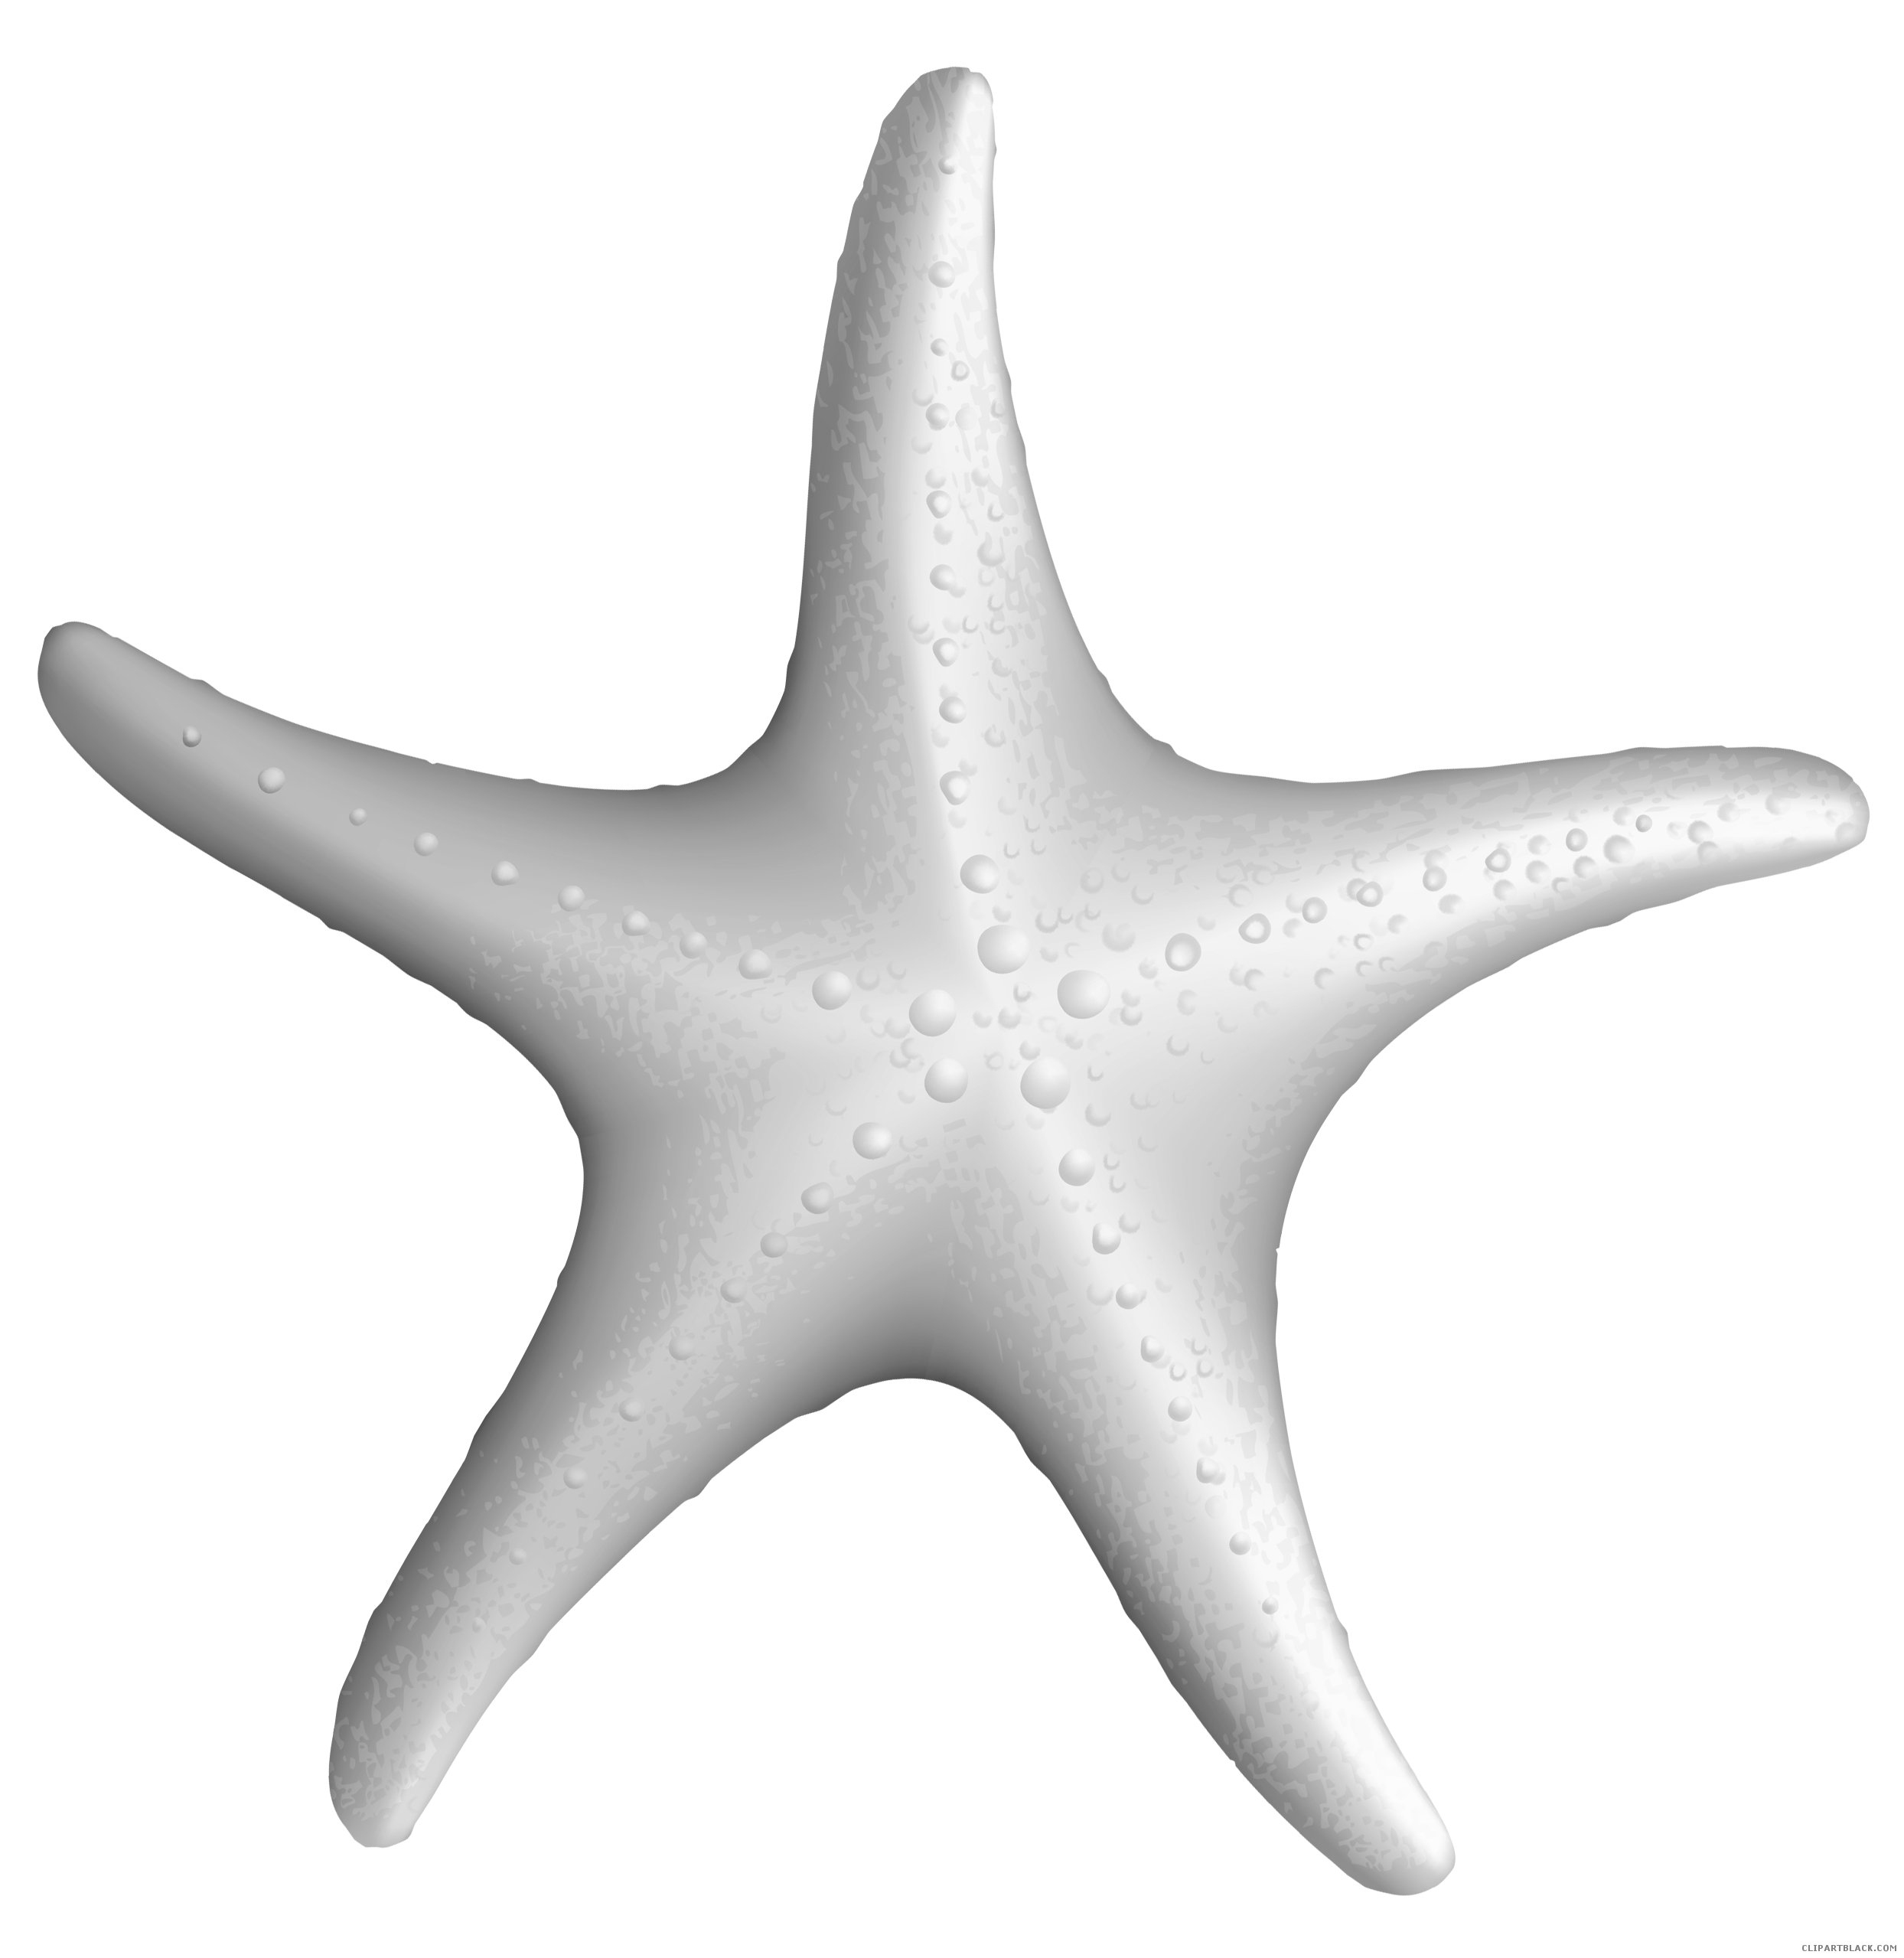 Starfish clipart black and white, Starfish black and white